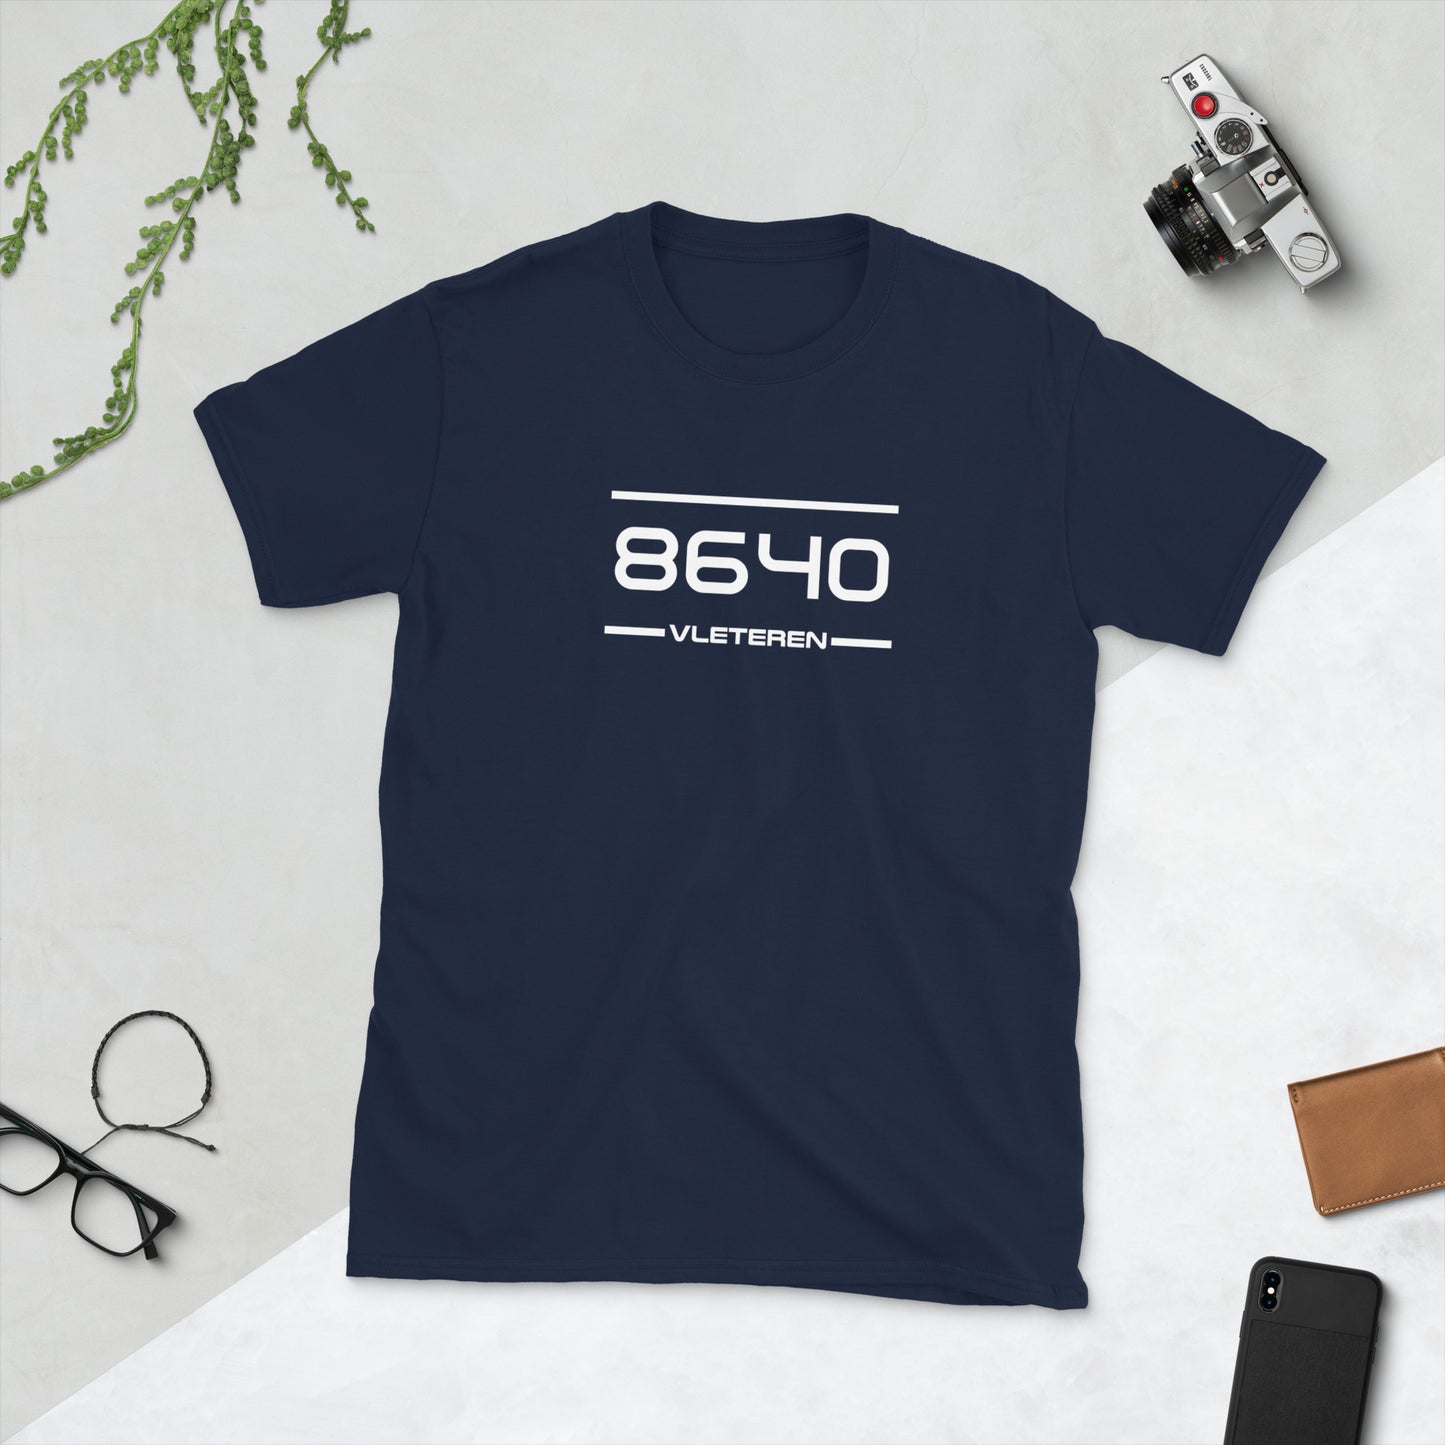 Tshirt - 8640 - Vleteren